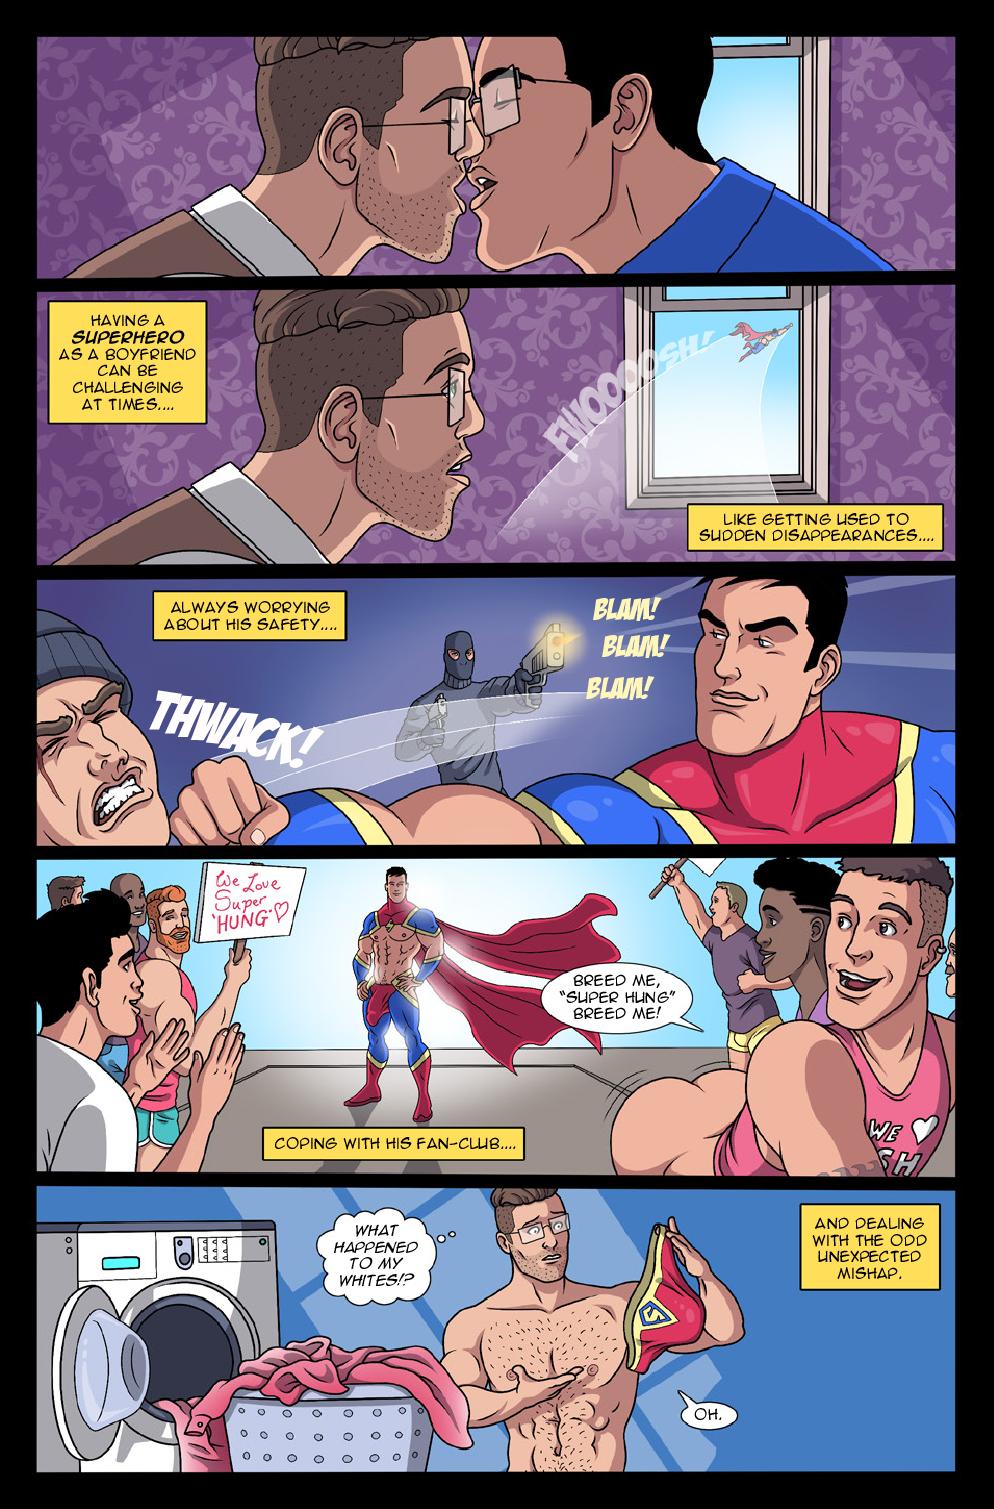 Super Hung! 2 [Alexander] - Porn Cartoon Comics